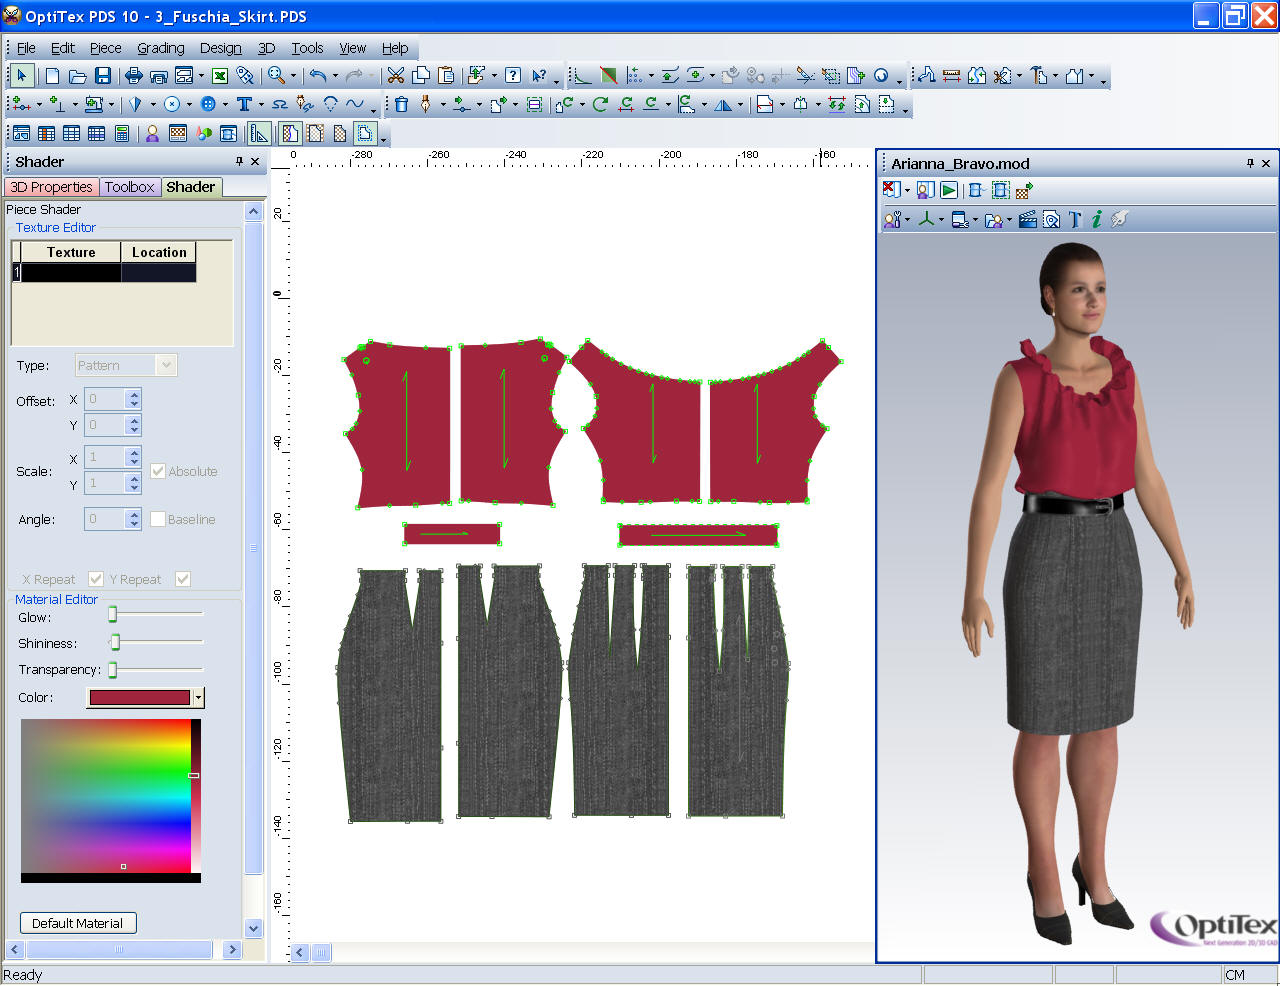 Estudio Logos | Diseño Indumentaria: un software de CAD en 2D Y 3D ideal para diseñar prendas